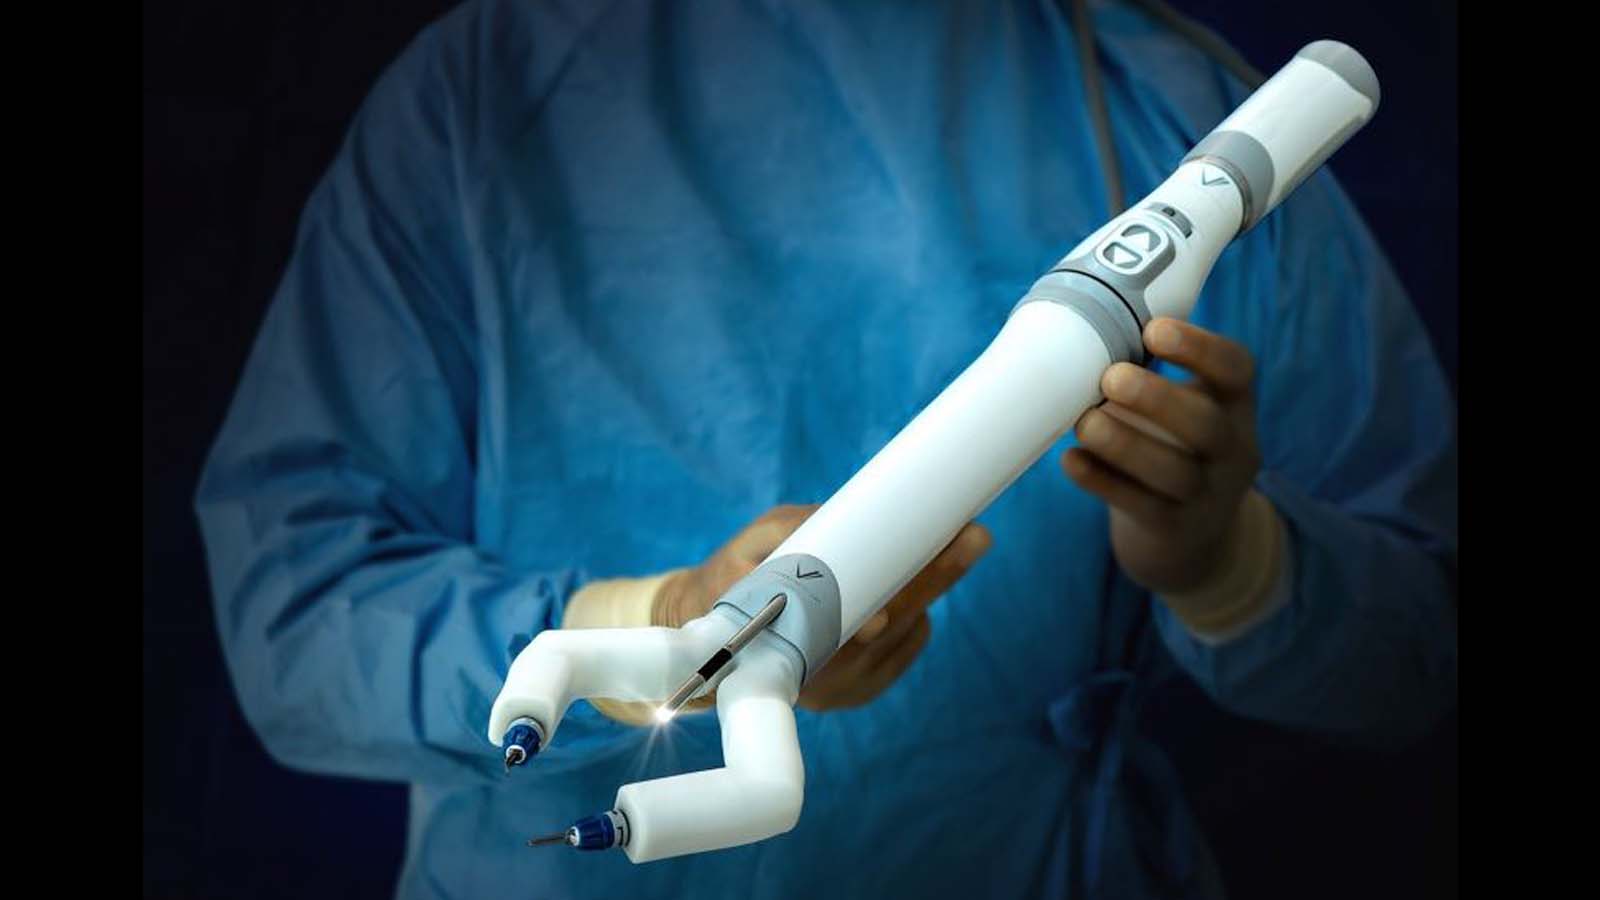 L'evoluzione della robotica chirurgica con spaceMIRA per affrontare emergenze nello spazio profondo